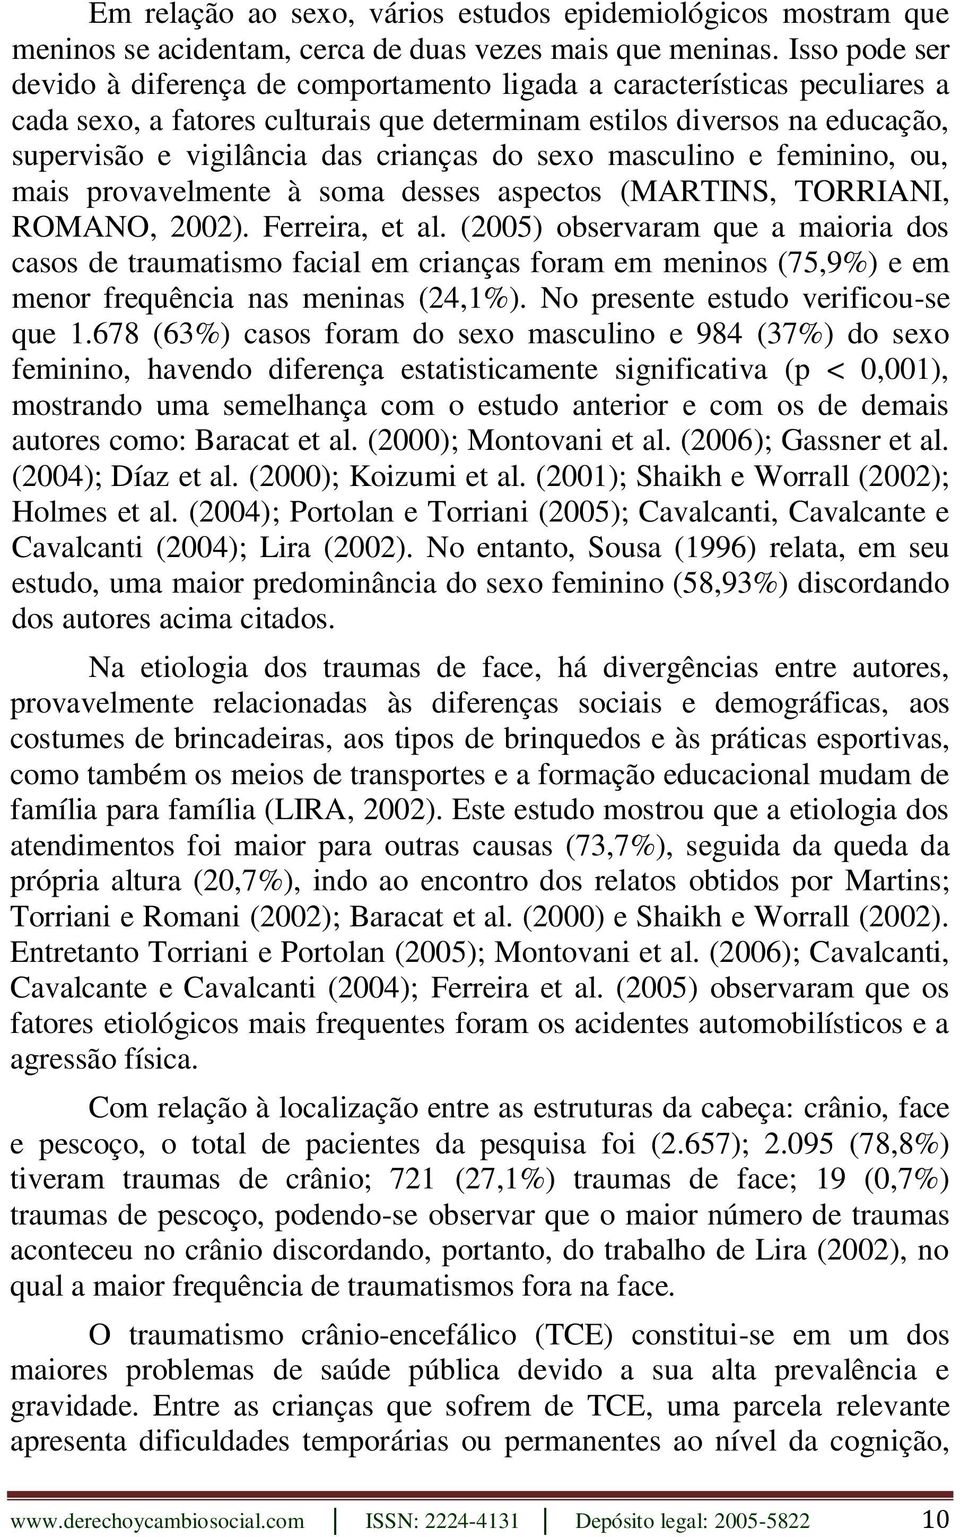 crianças do sexo masculino e feminino, ou, mais provavelmente à soma desses aspectos (MARTINS, TORRIANI, ROMANO, 2002). Ferreira, et al.